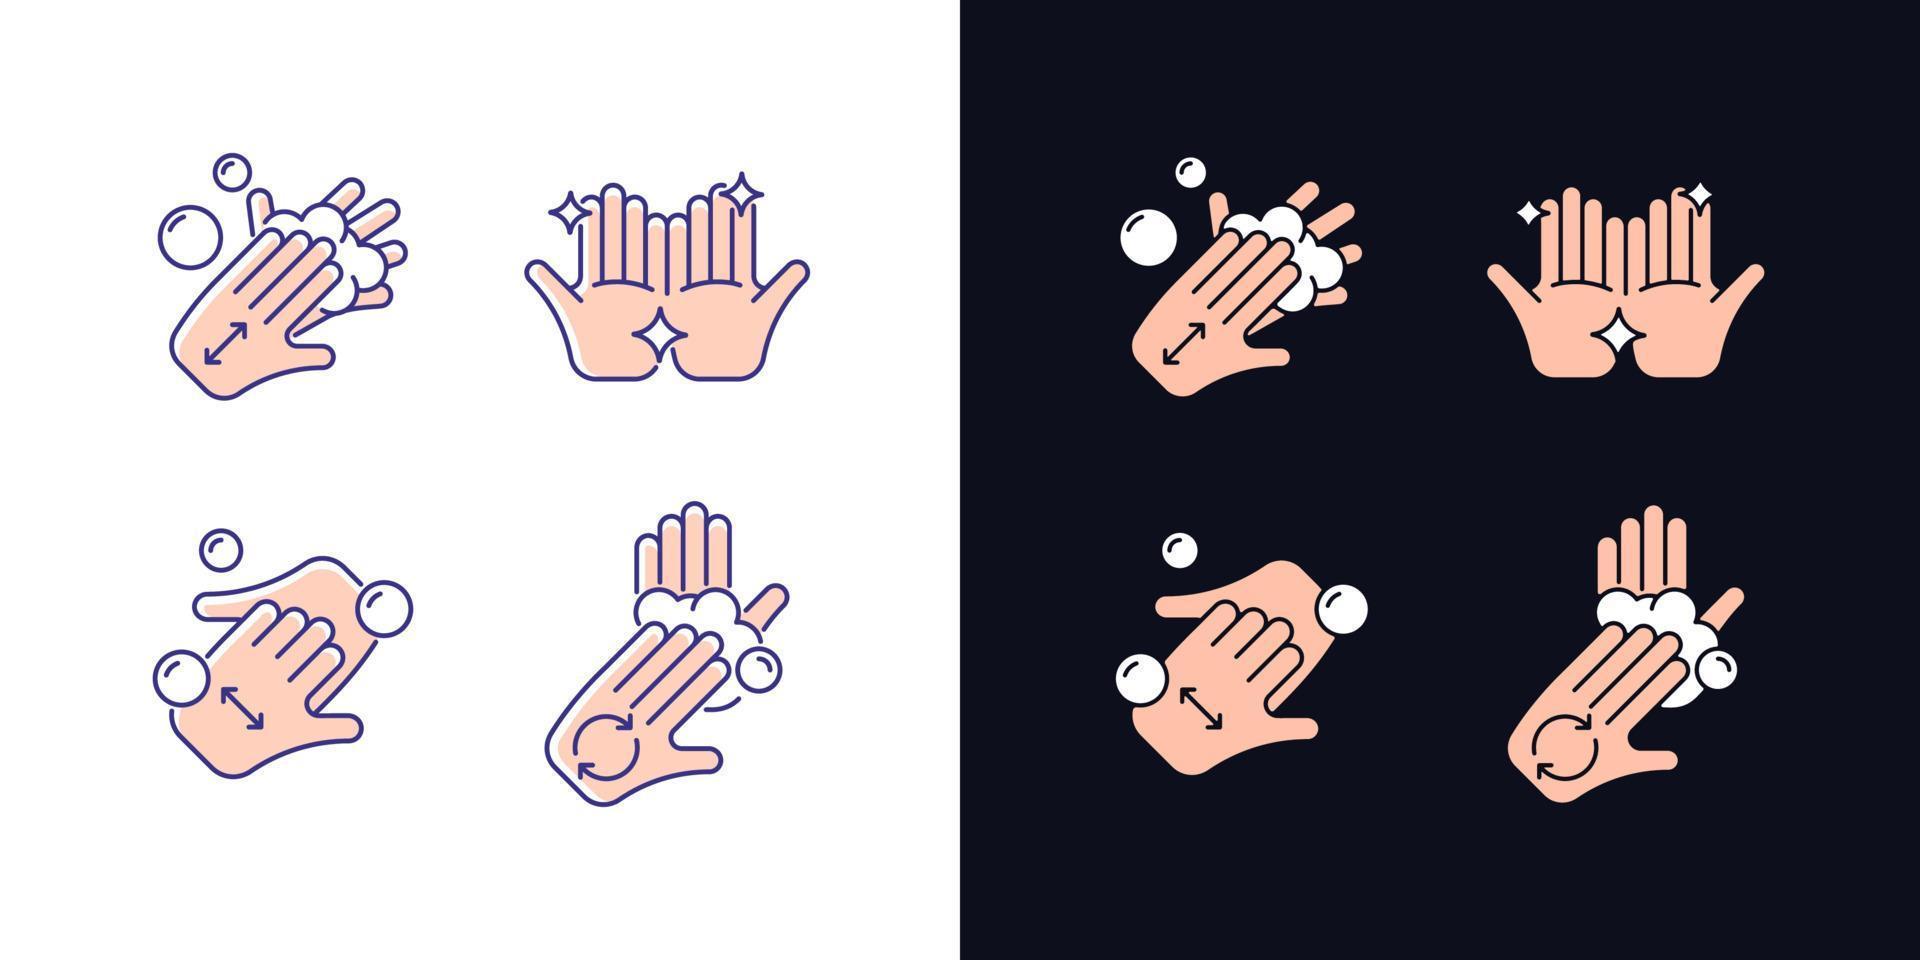 lavar as mãos instruções conjunto de ícones de cores rgb de tema claro e escuro. esfregue as palmas das mãos com sabão. dedos em forma de xícara. ilustrações vetoriais isoladas no espaço branco e preto. pacote de desenhos de linhas simples preenchidas vetor